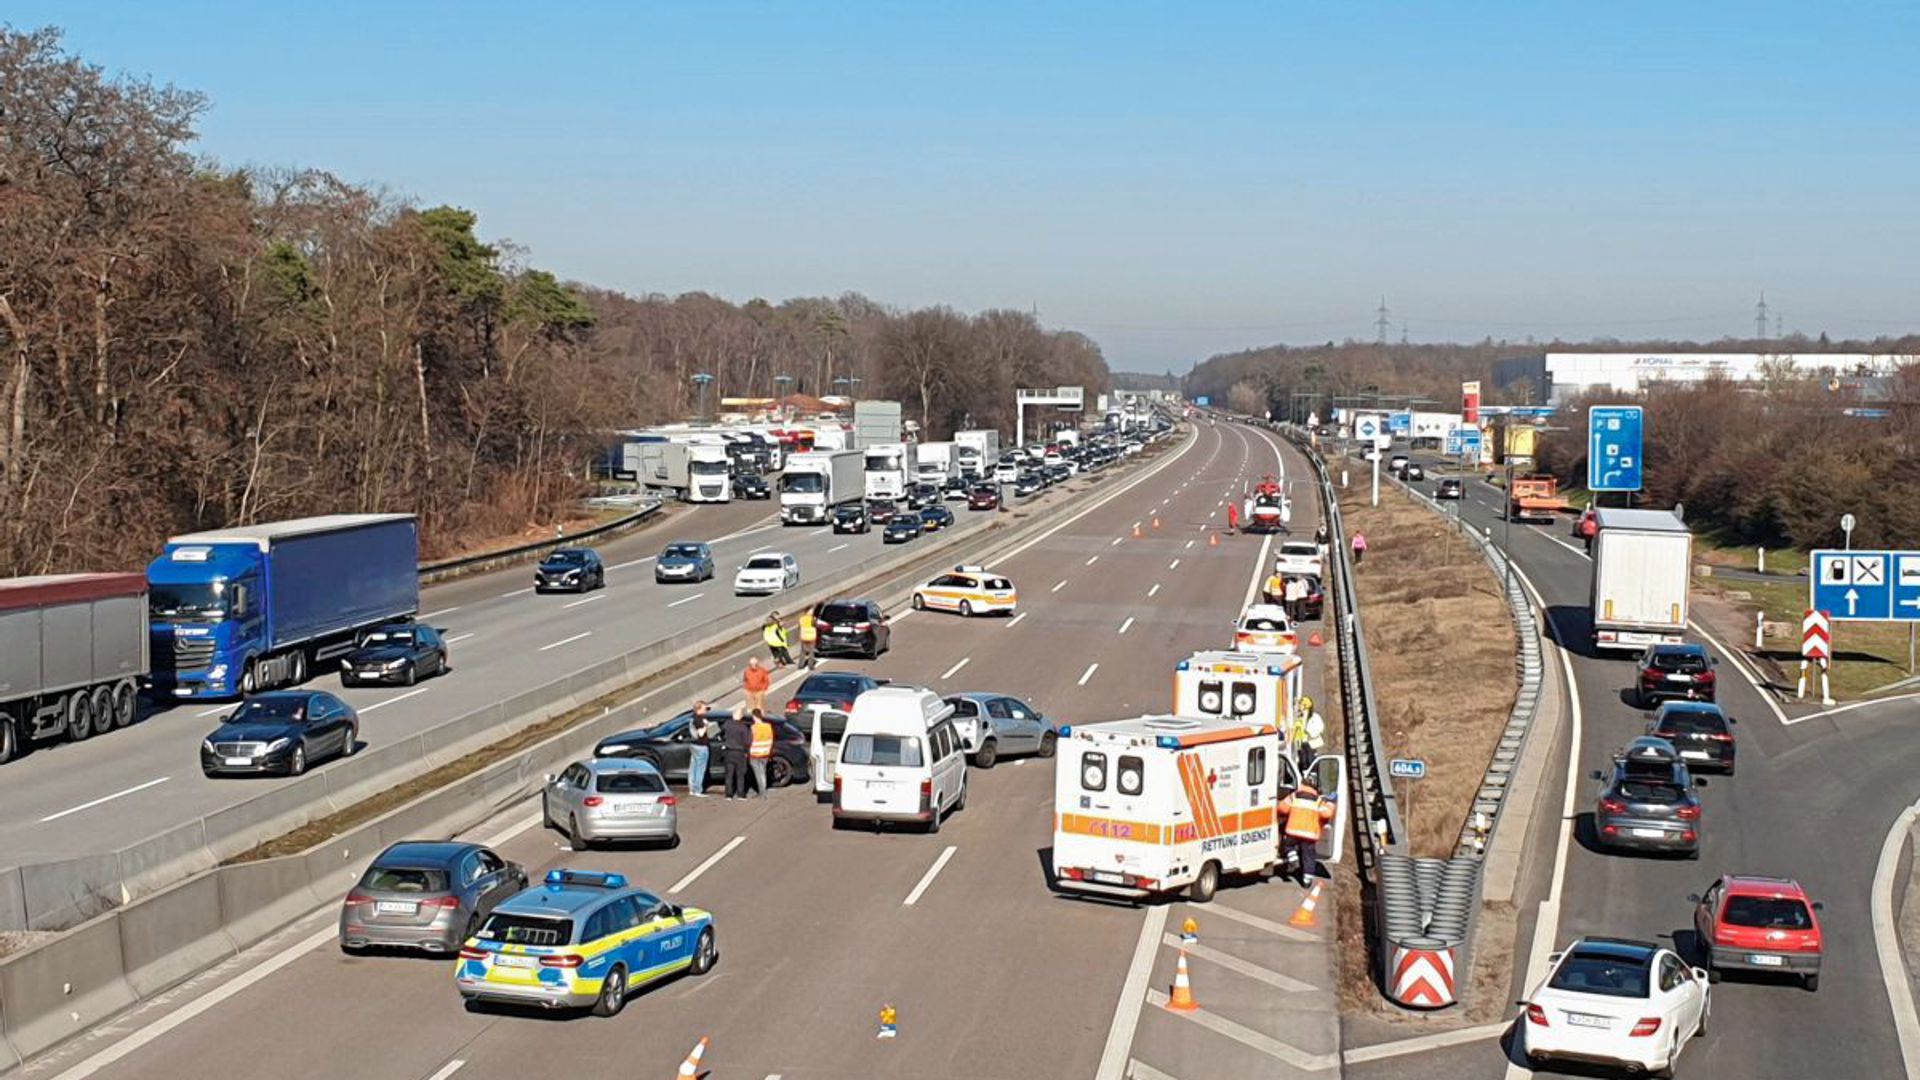 Am Samstagnachmittag kam es auf der A5 bei Bruchsal zu einem Unfall mit vier Fahrzeugen.